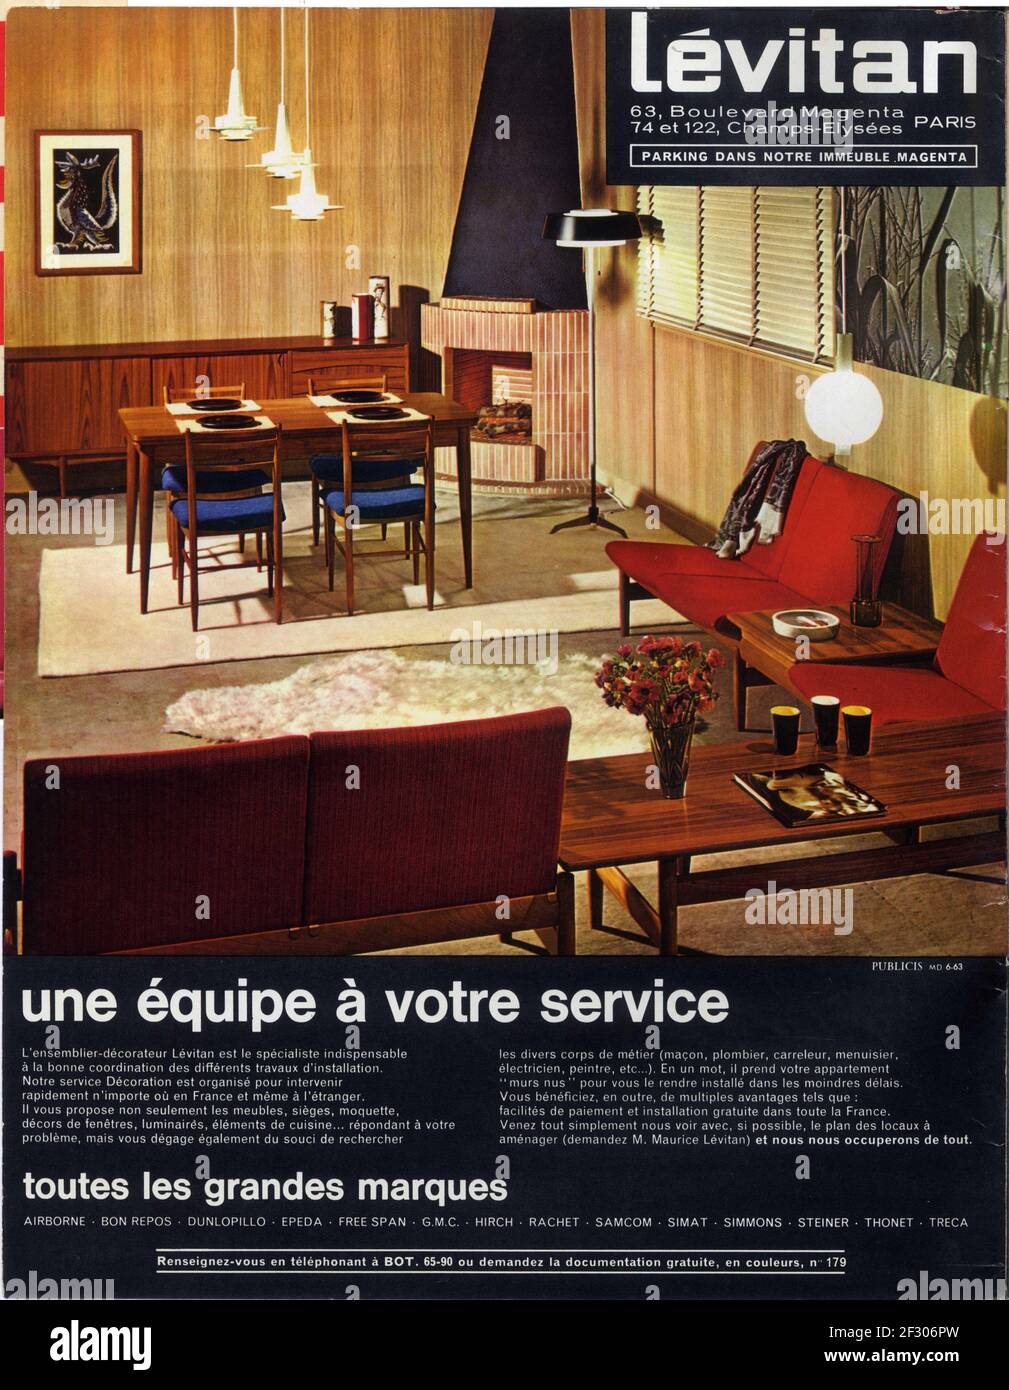 Publicité ancienne Lévitan, 1963. Servizio une équipe à votre Foto Stock